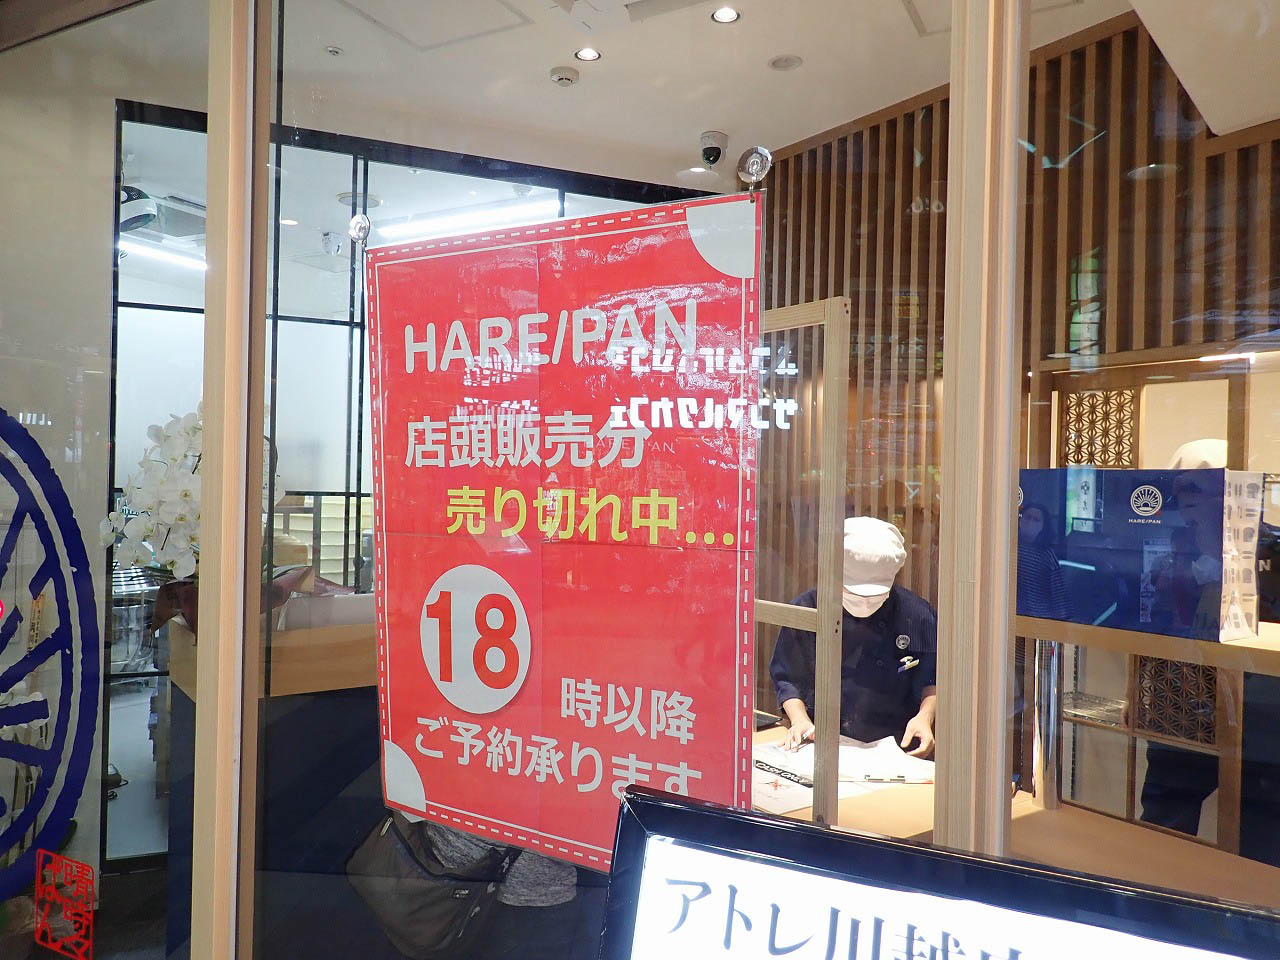 『純生食パン工房HARE／PAN・アトレ川越店』の売り切れの案内